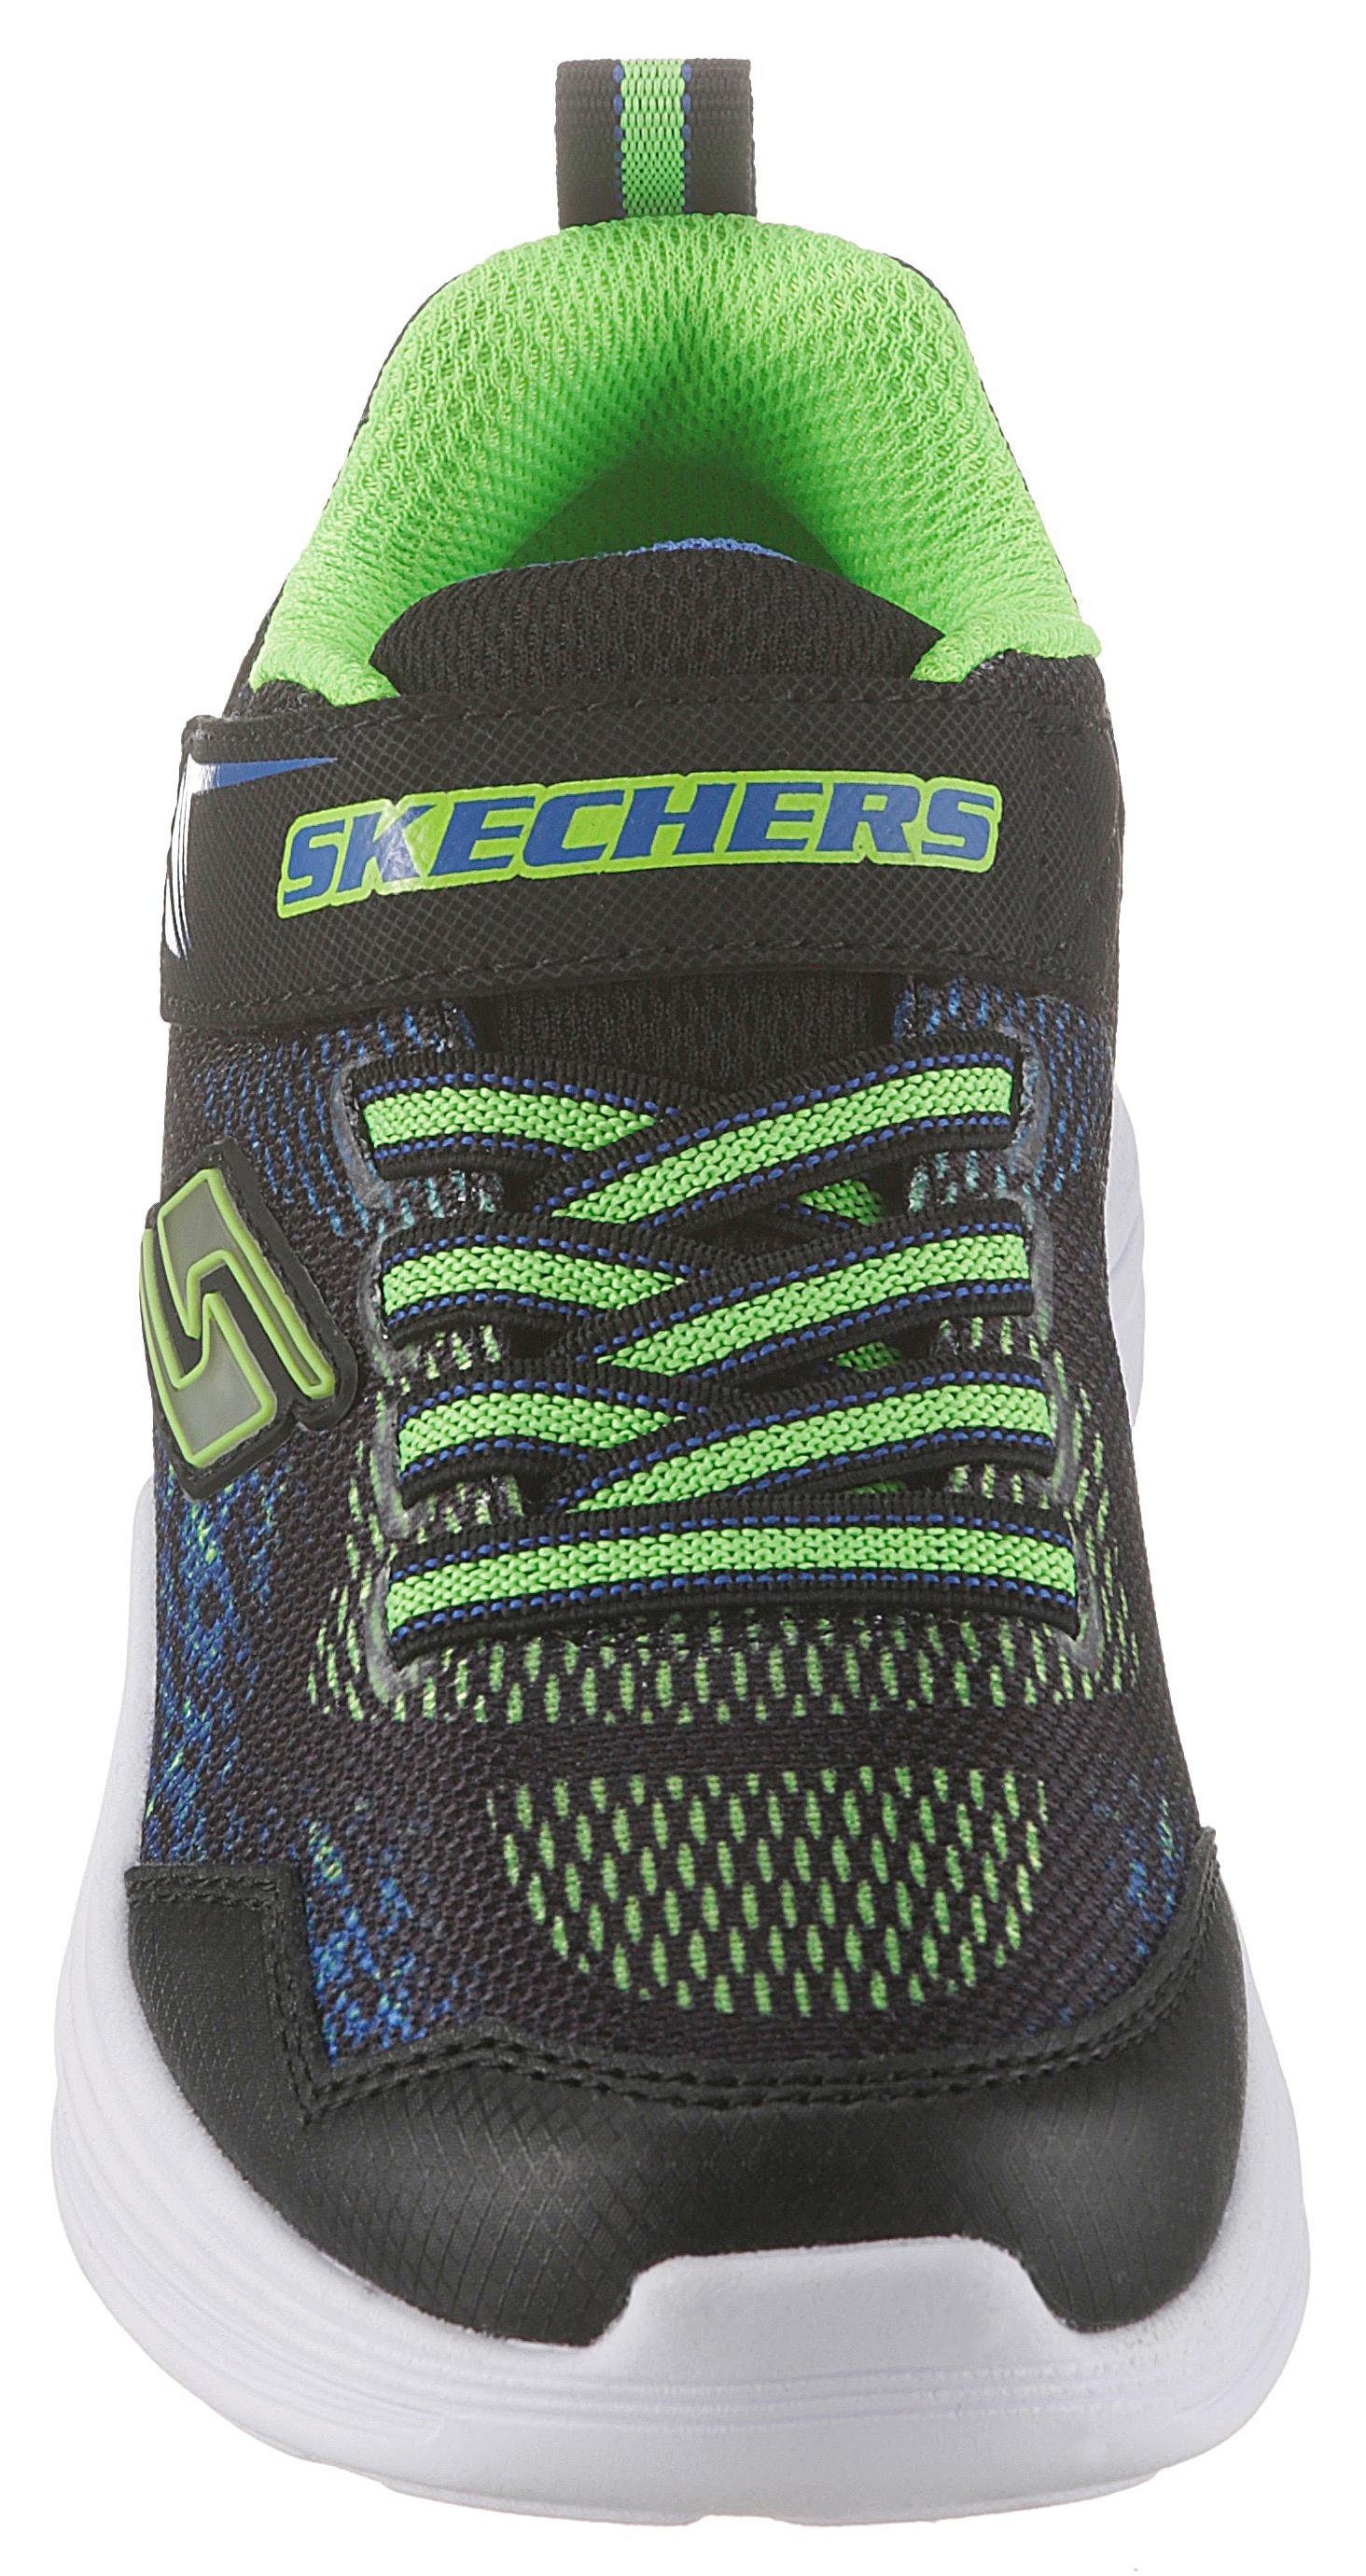 III Klettverschluss mit Skechers Gummiband Sneaker Kids Blinkschuh schwarz-grün-blau und Erupters